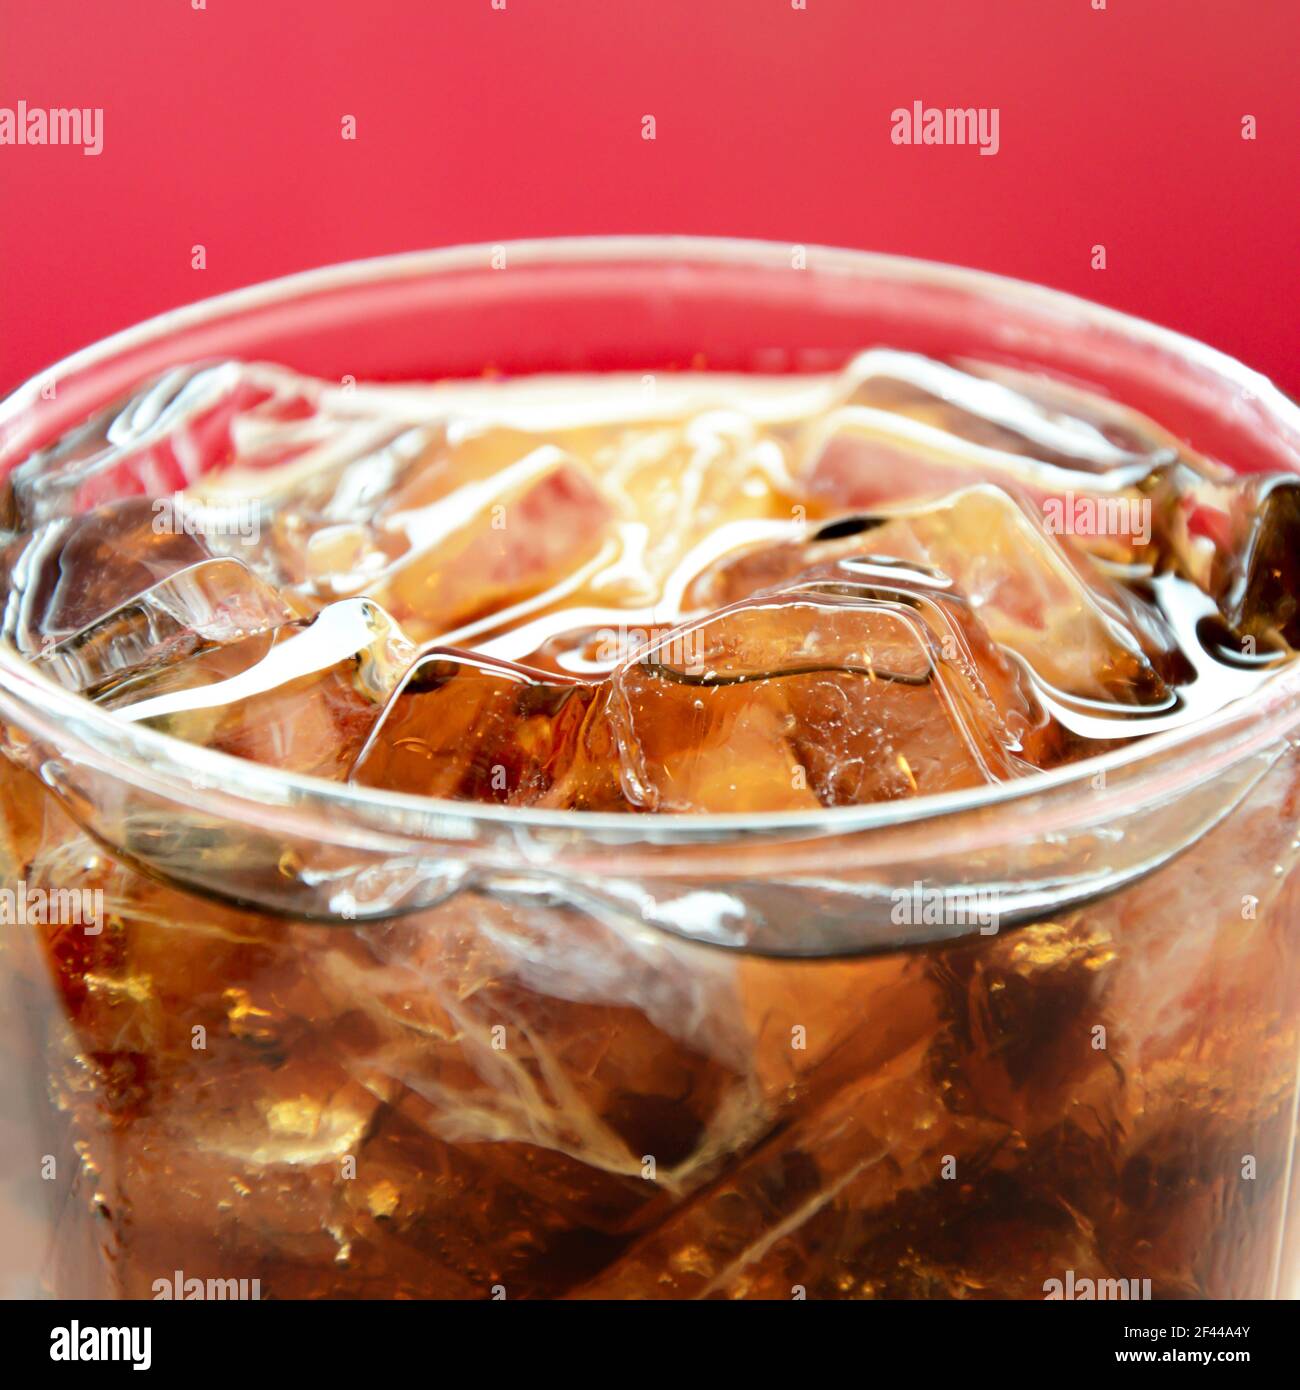 Un vaso de refresco de cola con cubitos de hielo fondo rojo Foto de stock